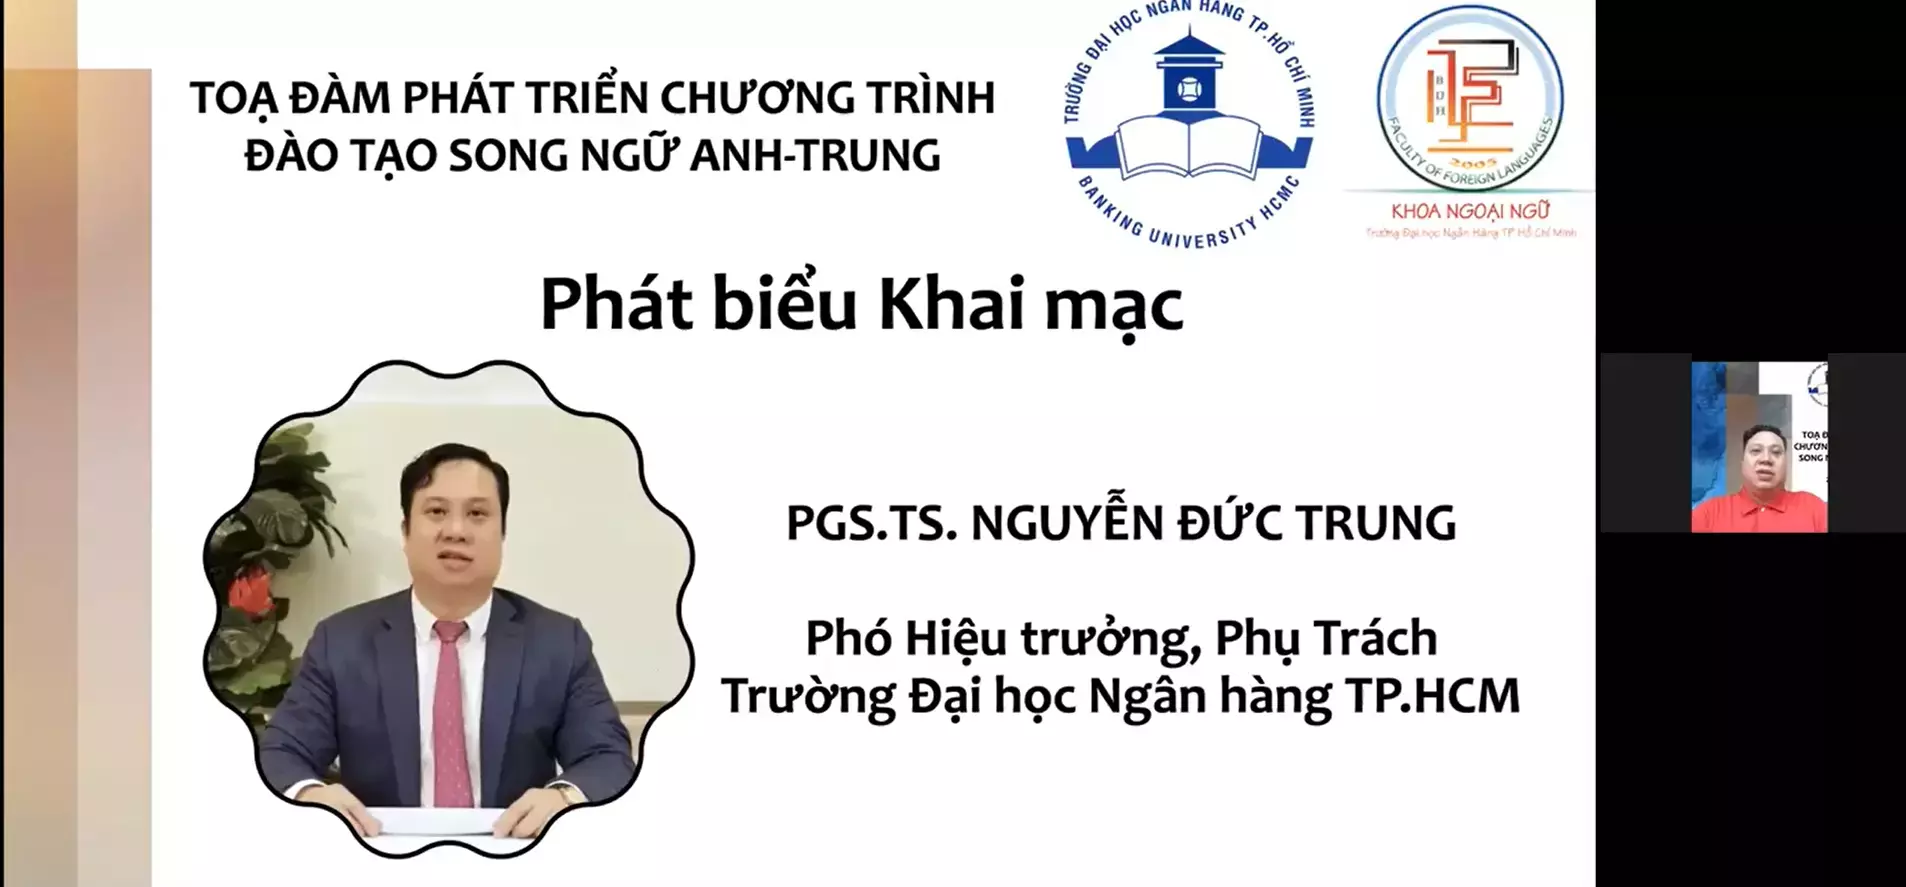 PGS. TS. Nguyễn Đức Trung - Phó hiệu trưởng phụ trách phát biểu khai mạc Toạ đàm